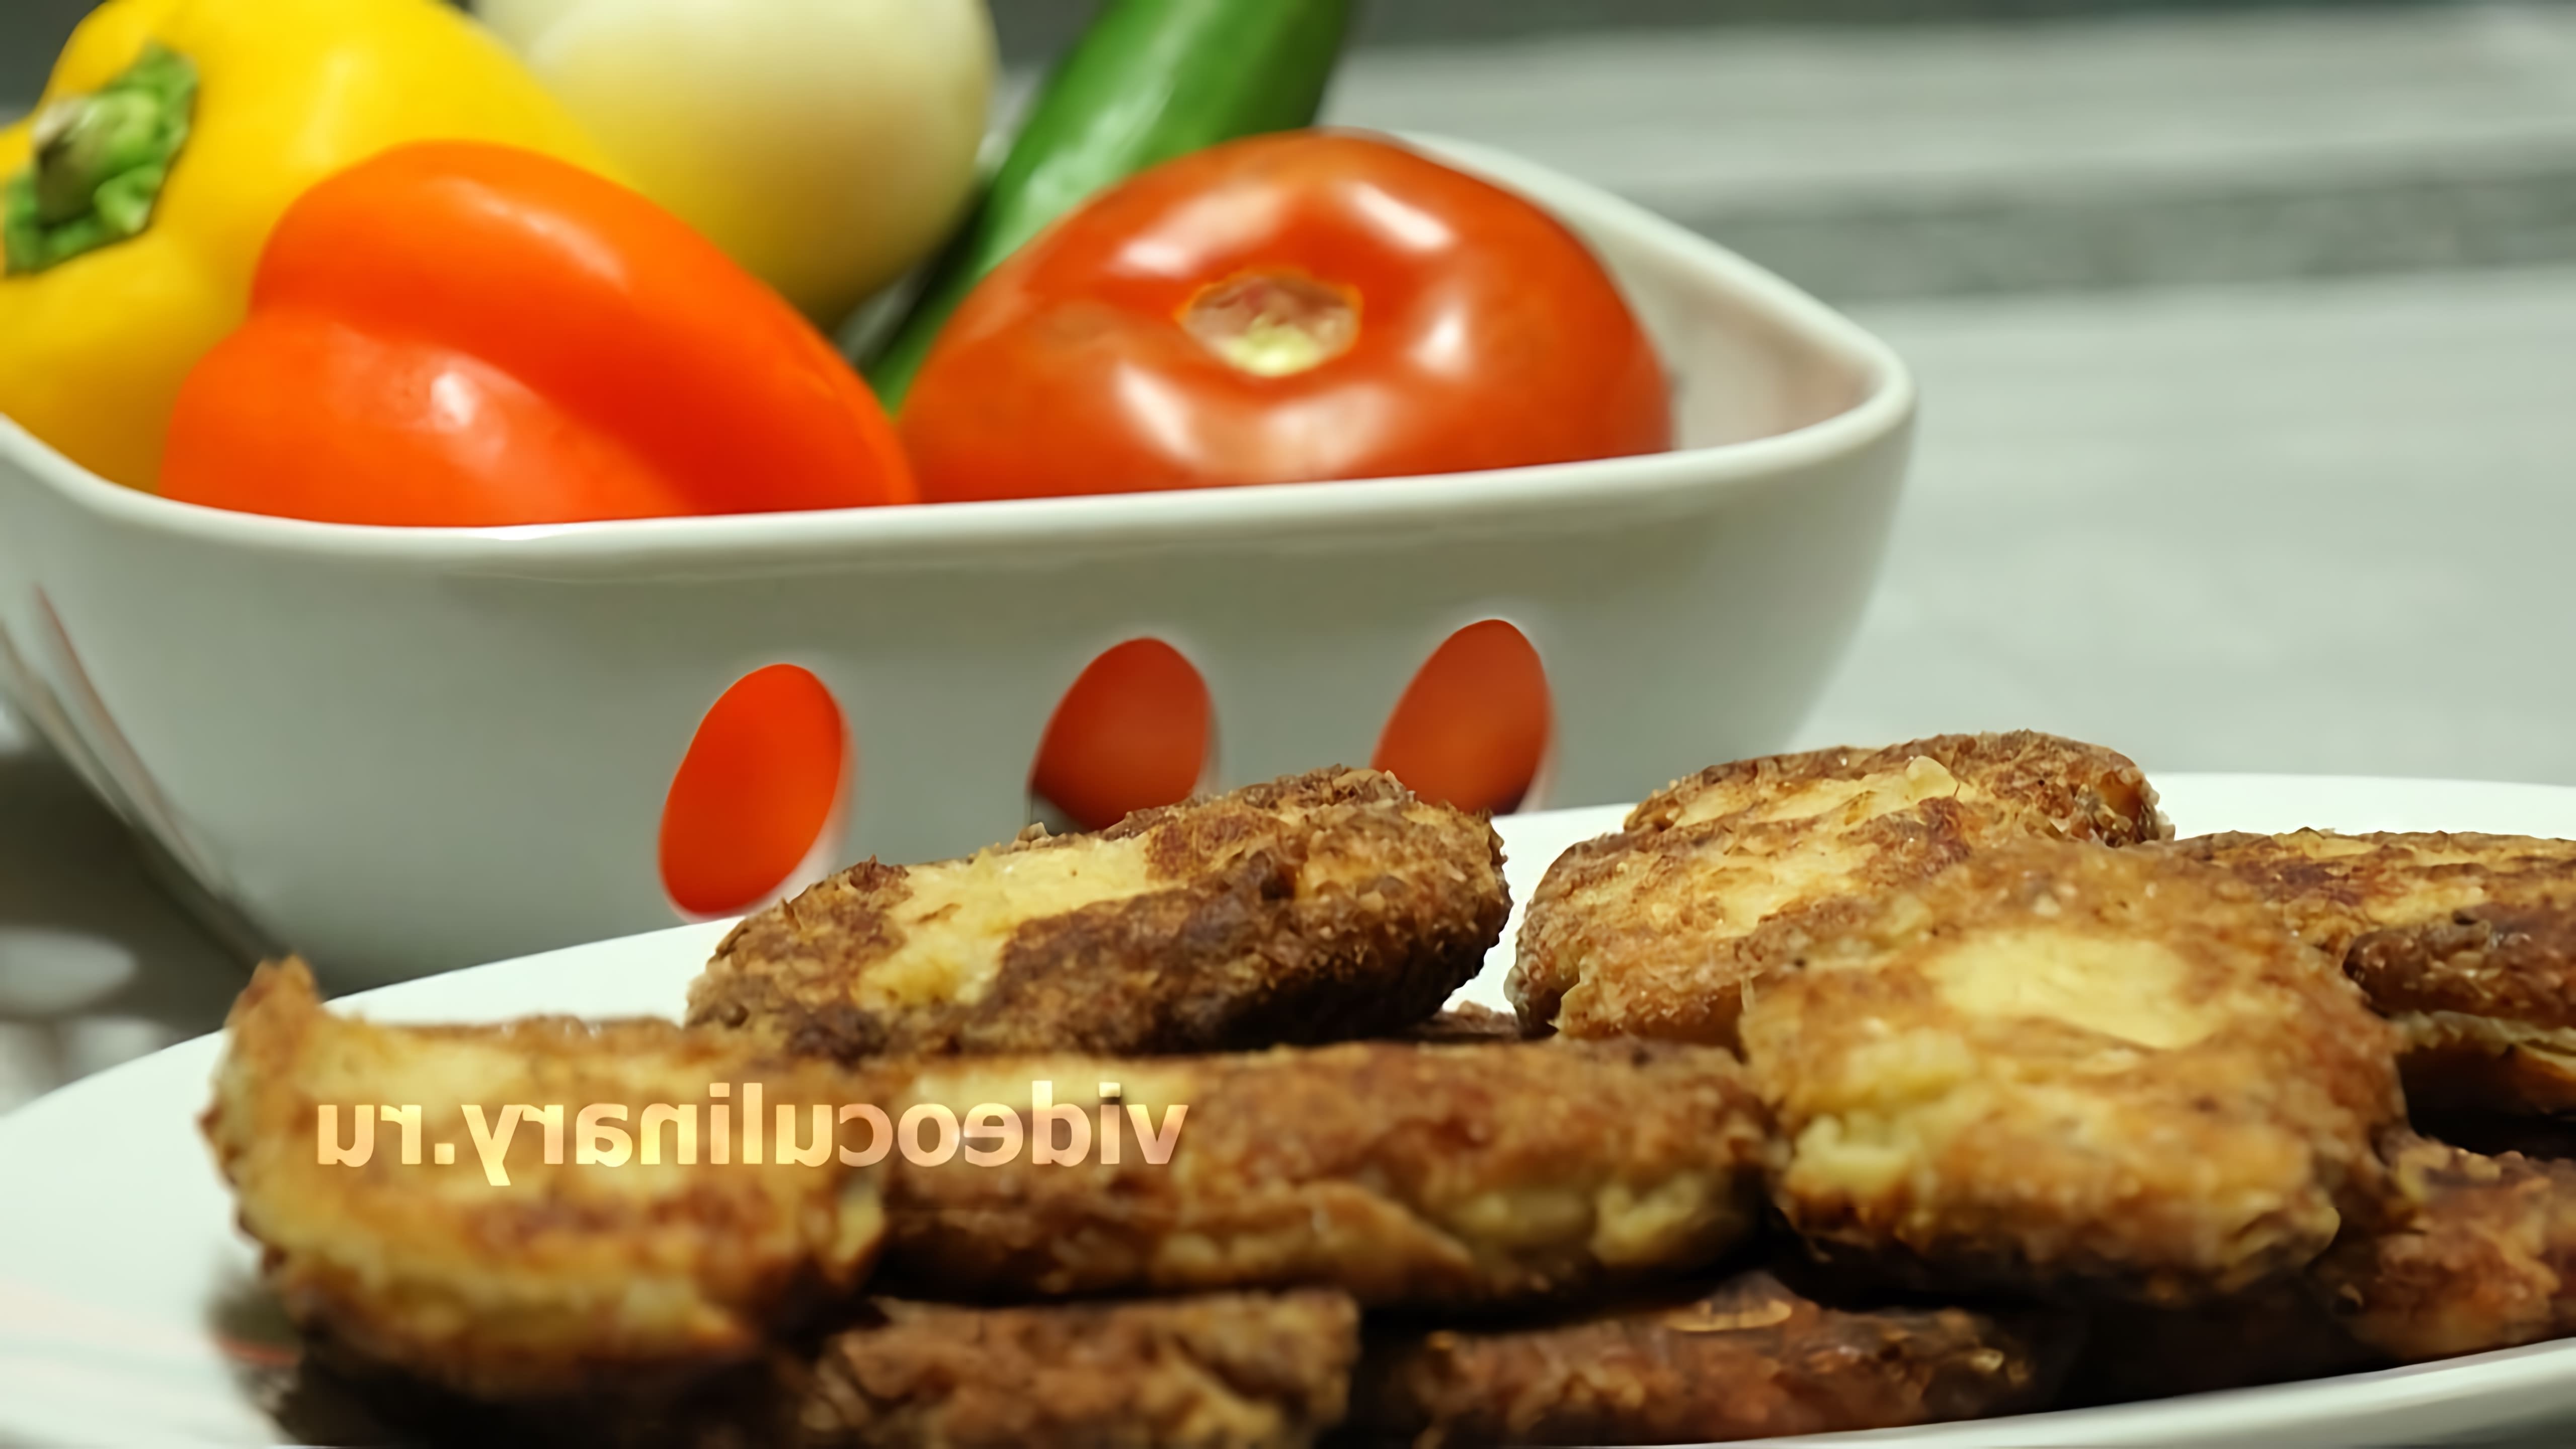 В этом видео демонстрируется рецепт картофельных котлет от Бабушки Эммы